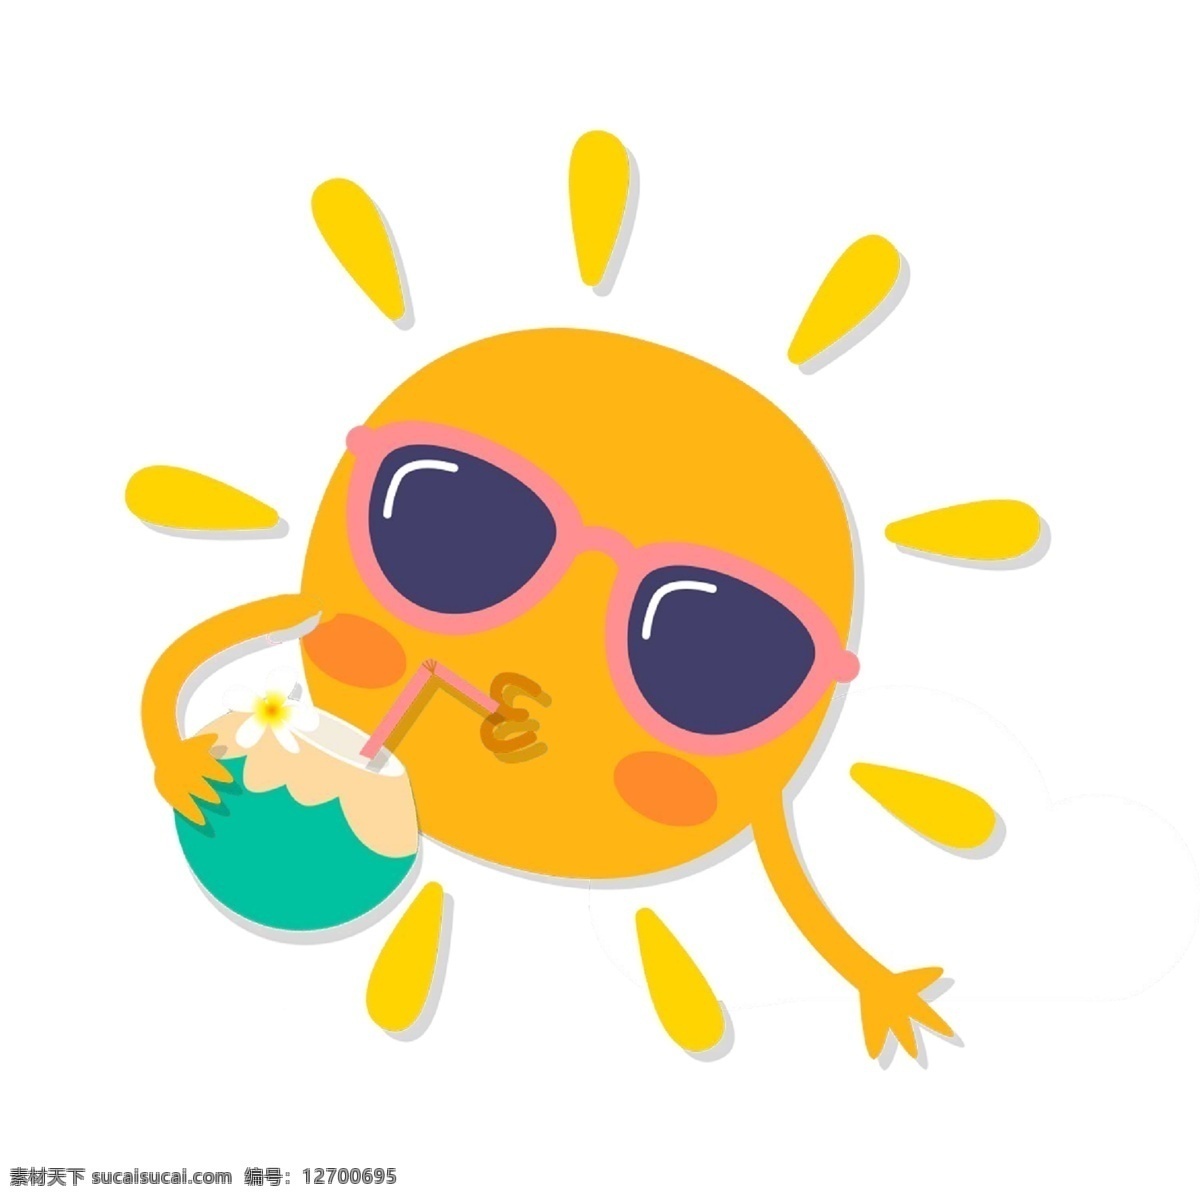 太阳素材 卡通太阳 太阳简笔画 手绘太阳